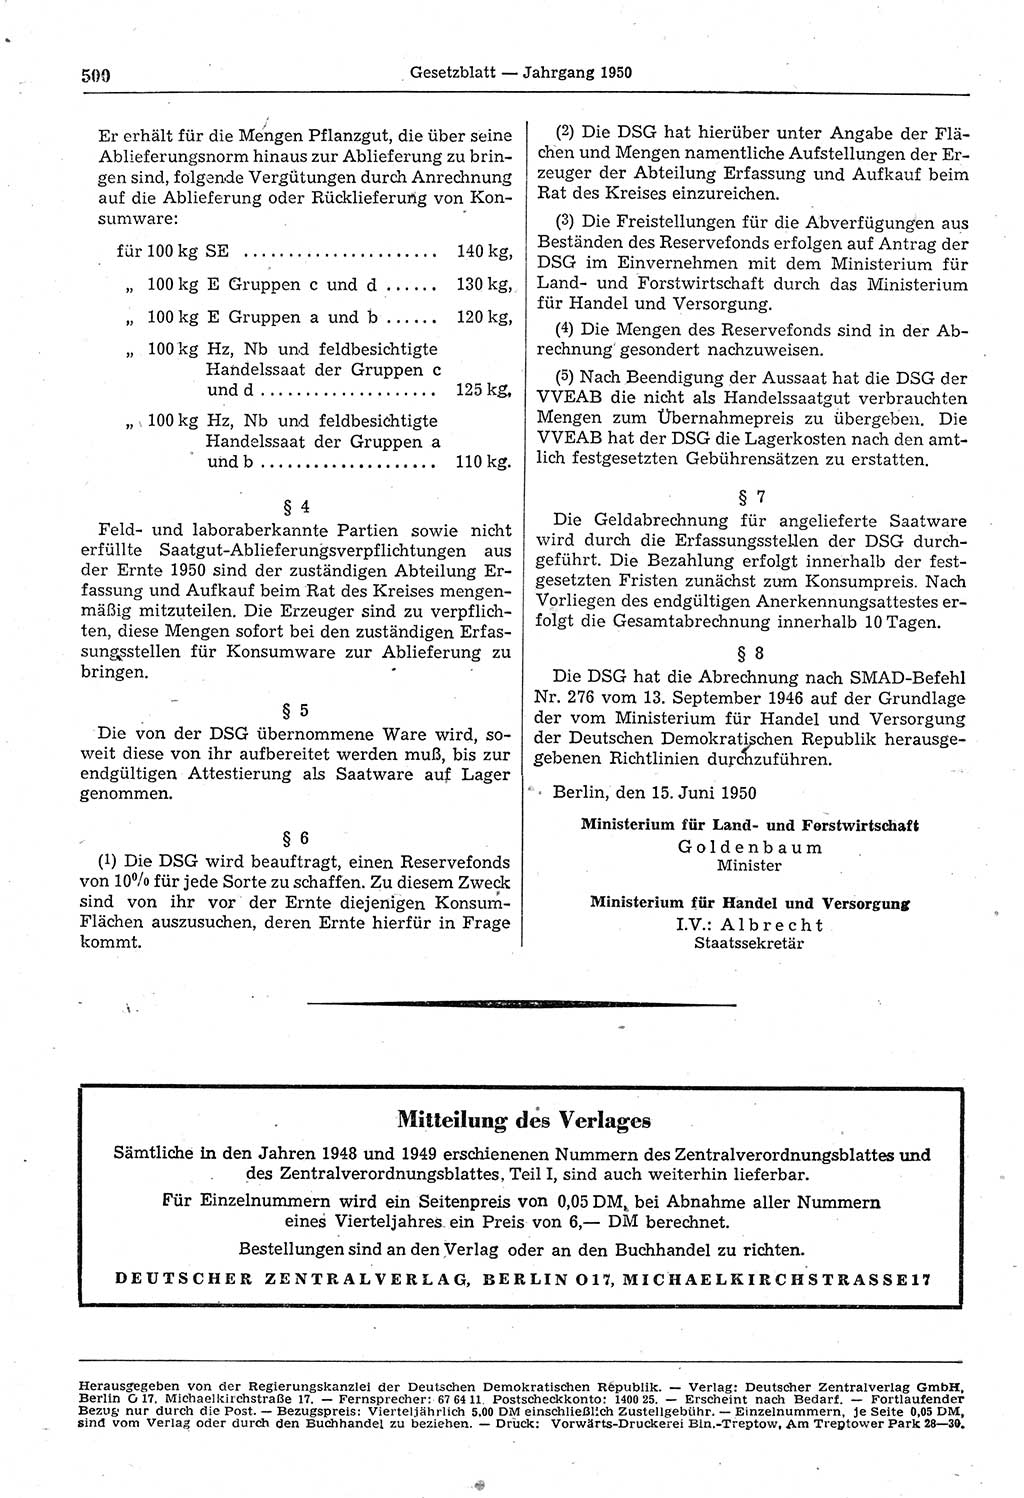 Gesetzblatt (GBl.) der Deutschen Demokratischen Republik (DDR) 1950, Seite 500 (GBl. DDR 1950, S. 500)